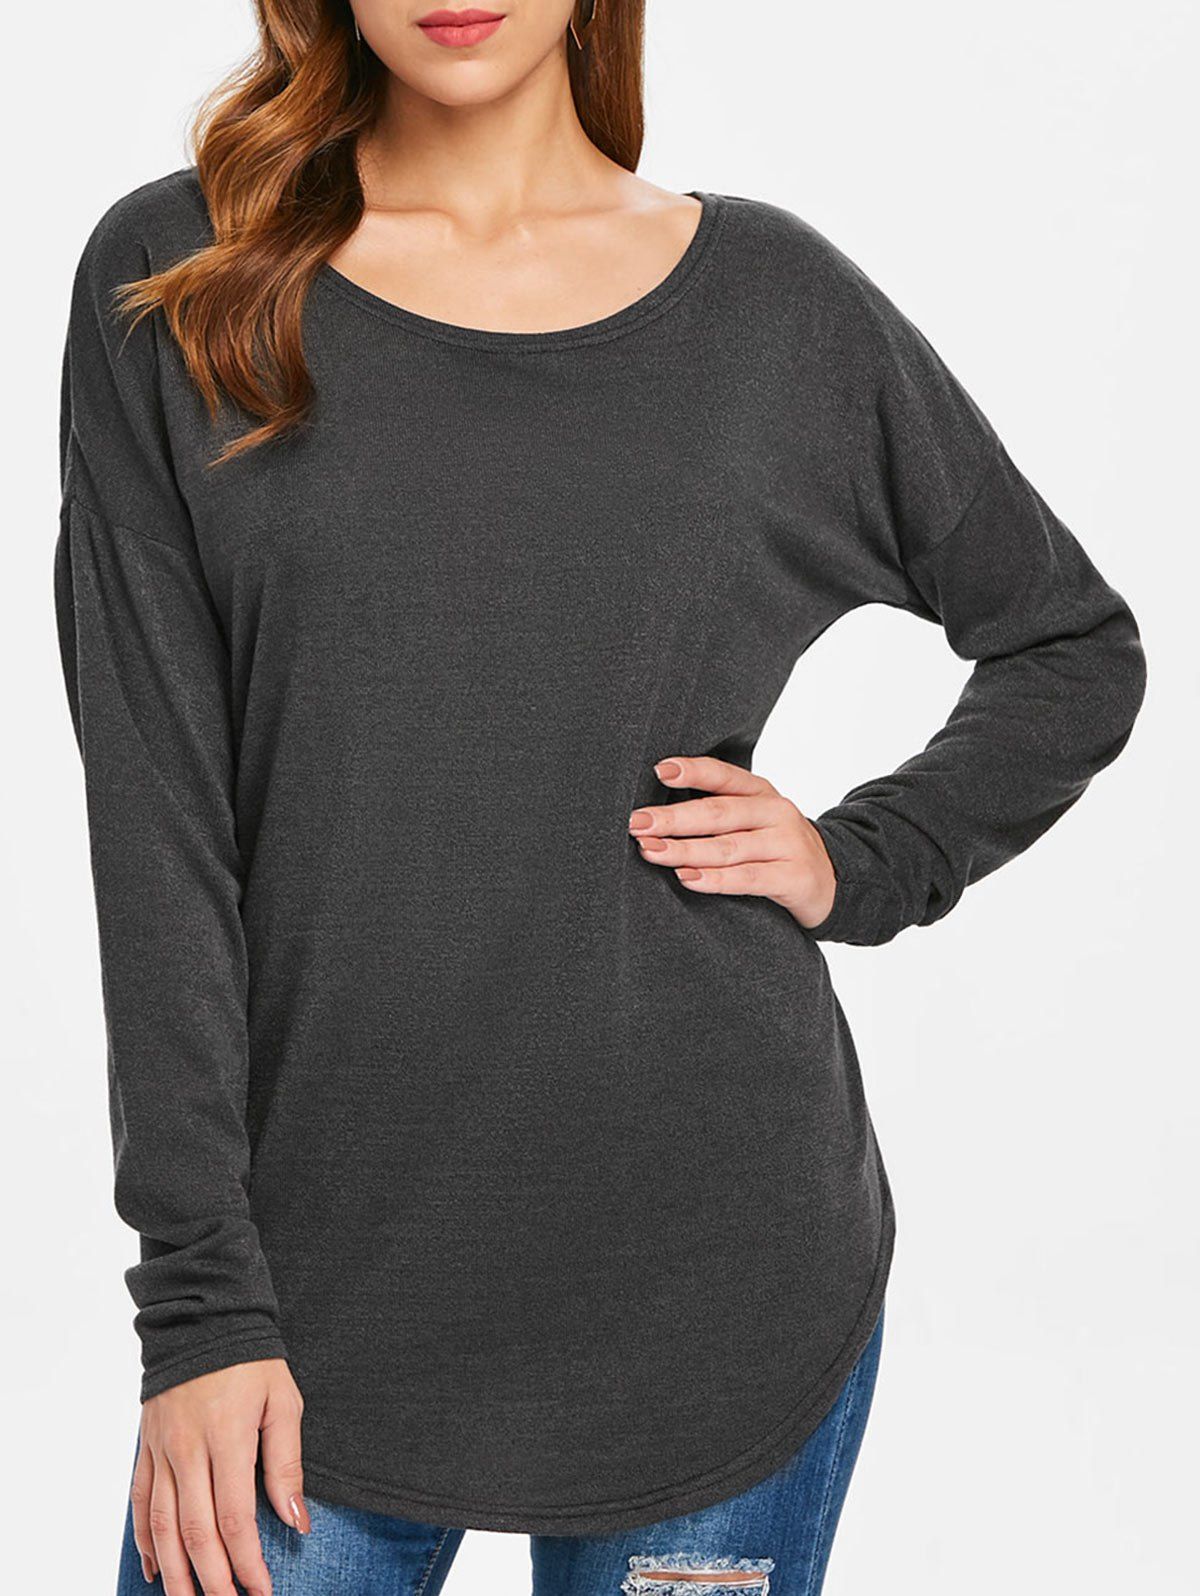 Trendy Women's Stylish Scoop Neck Asymmetrical Long Sleeve Sweater  